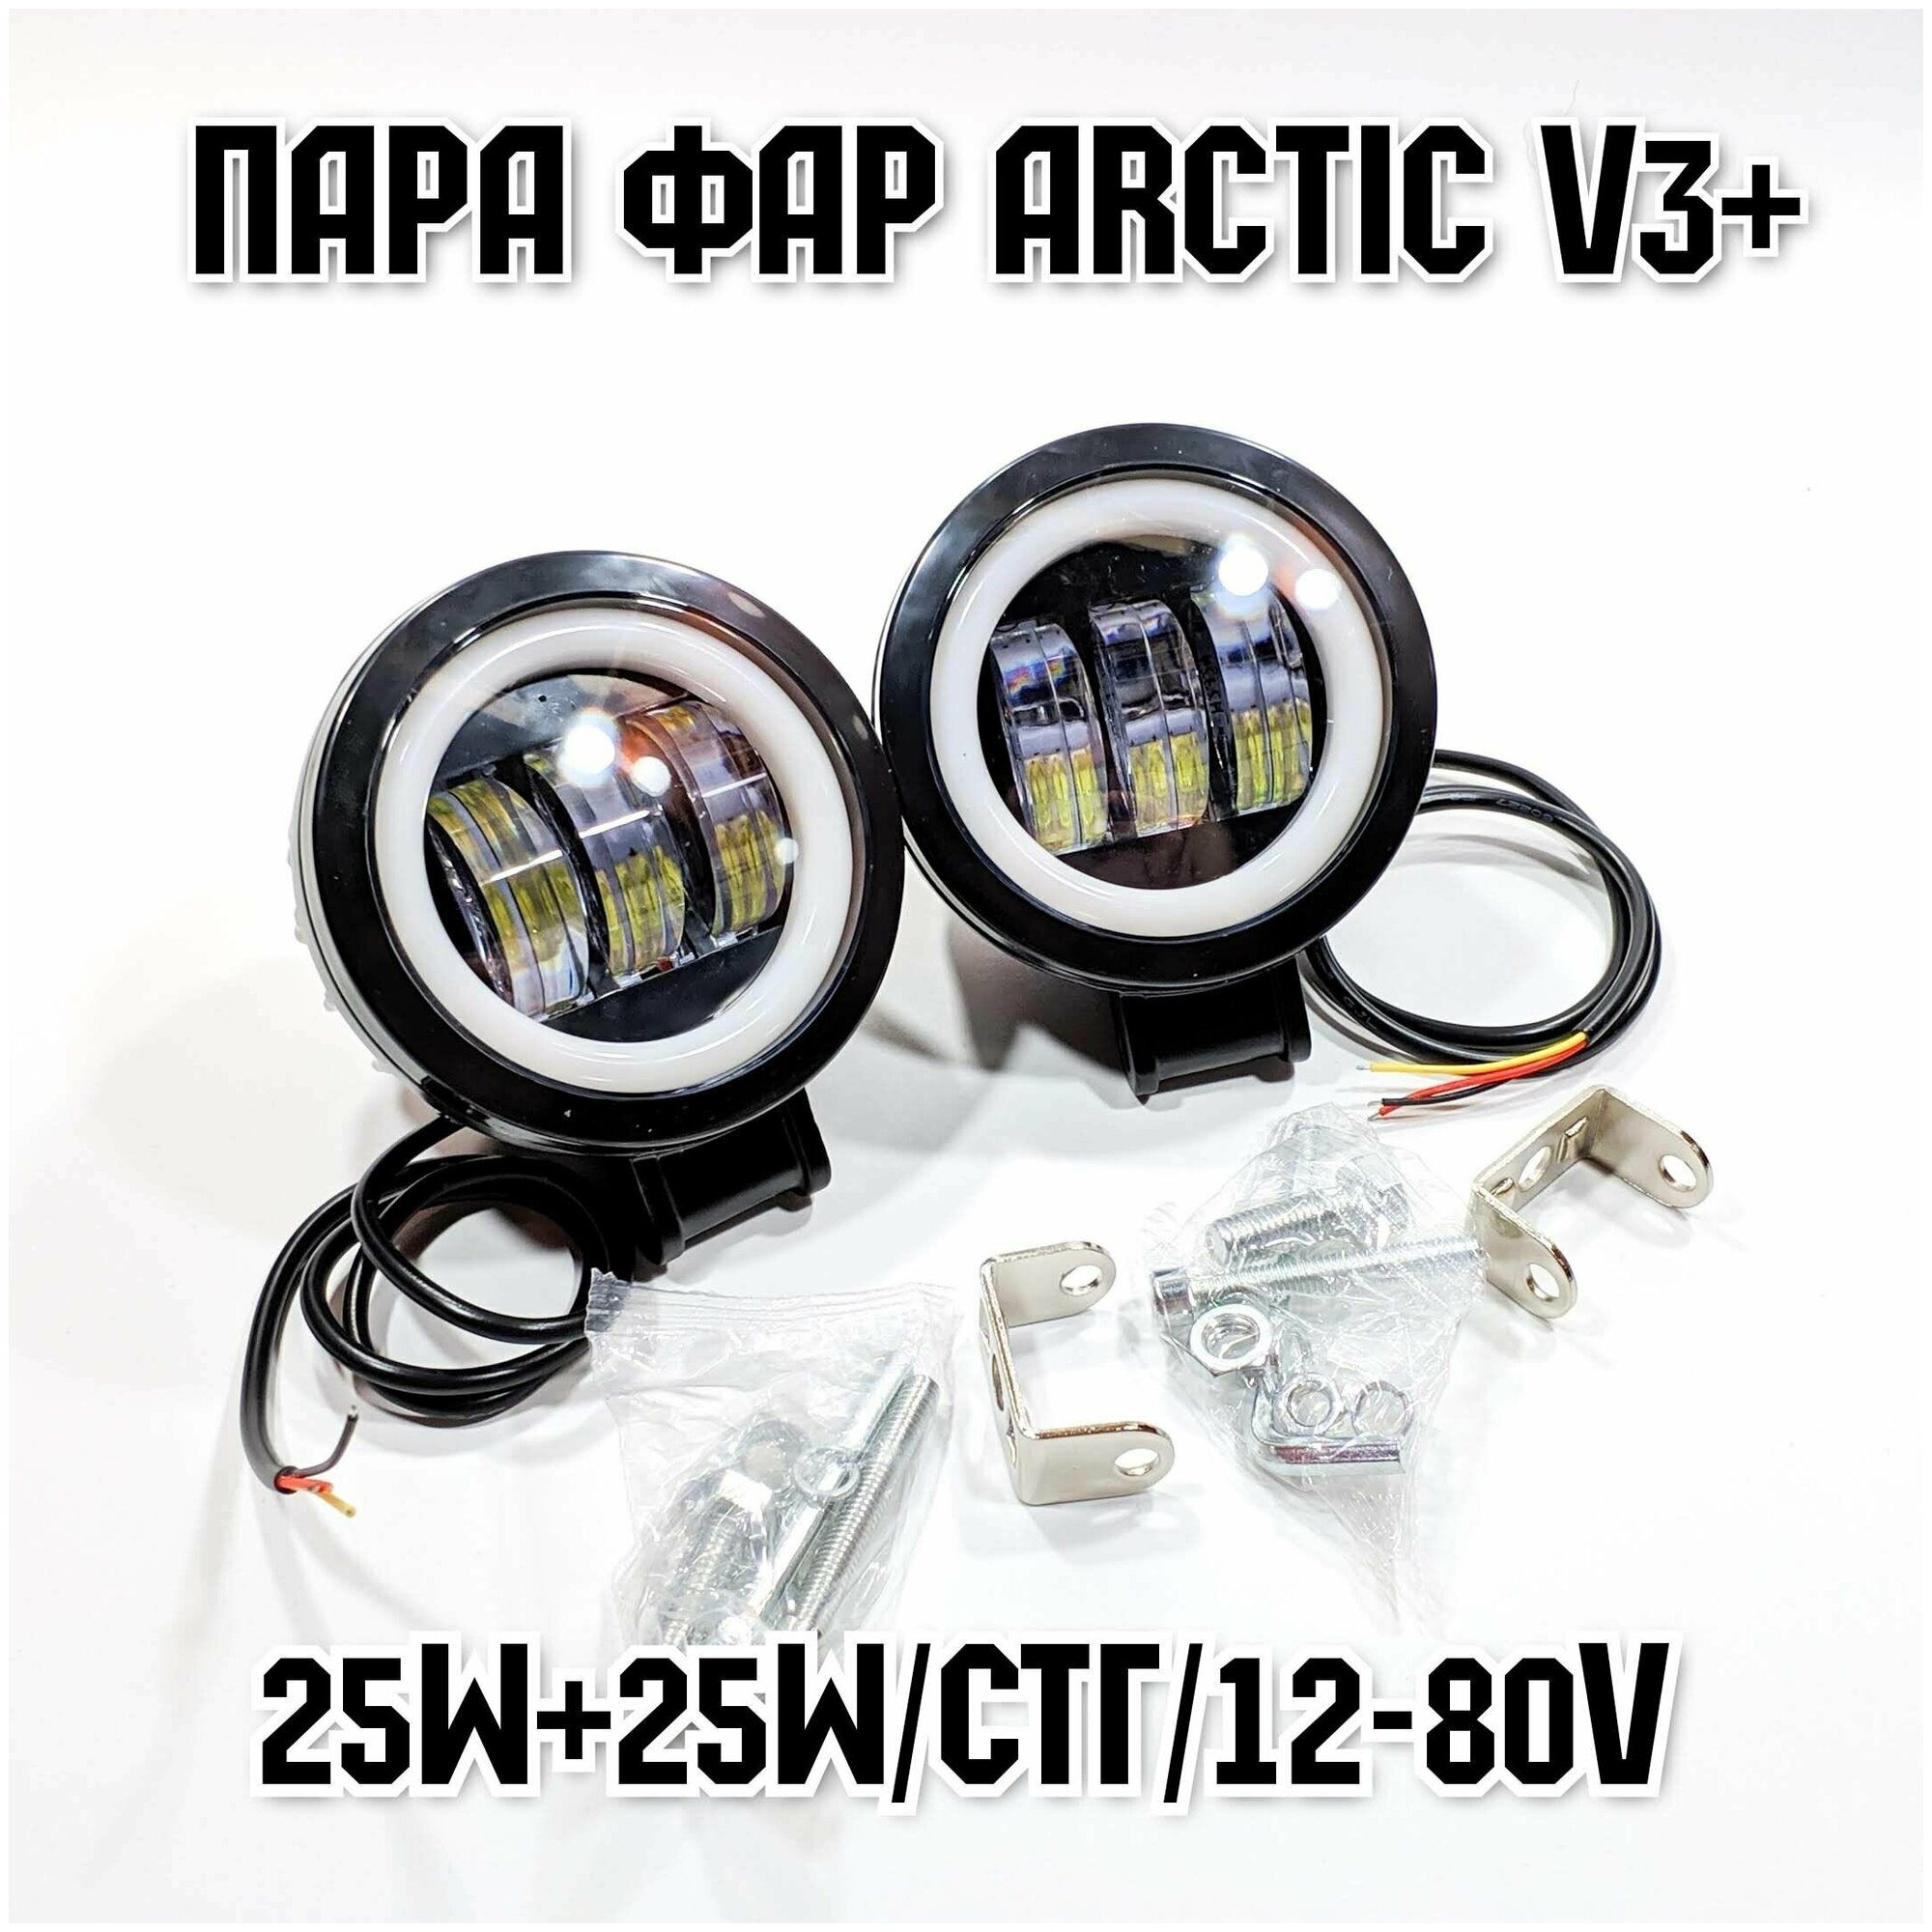 Оригинальные фары Arctic V3+ (круглые) 2шт(пара) - 12-80В ,25W , свето .